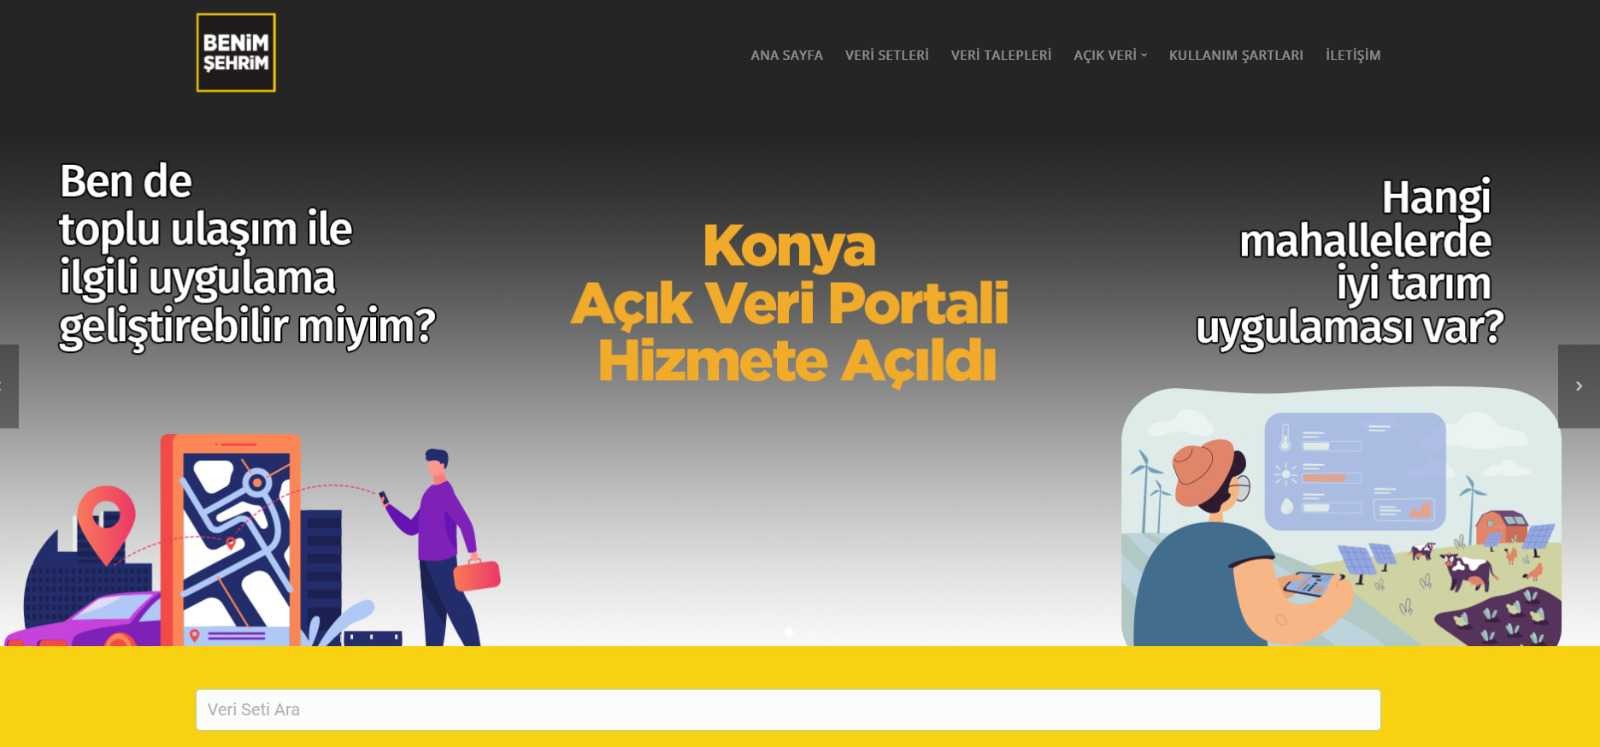 Konya Açık Veri Portalı hizmete girdi #konya